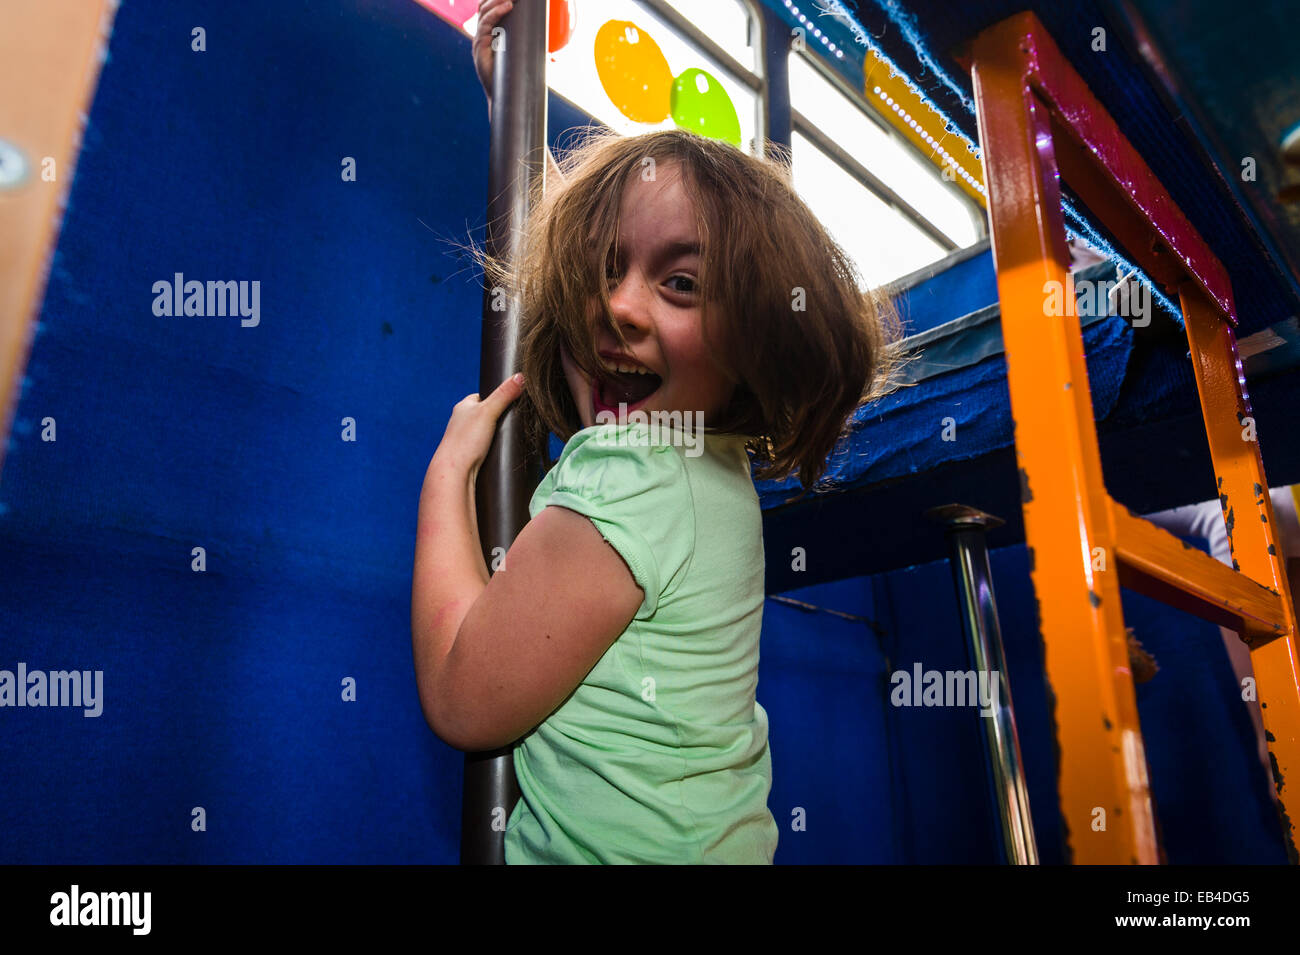 Bambini che giocano su un autobus a due piani trasformato in una festa di compleanno luogo per attività ginniche. Foto Stock